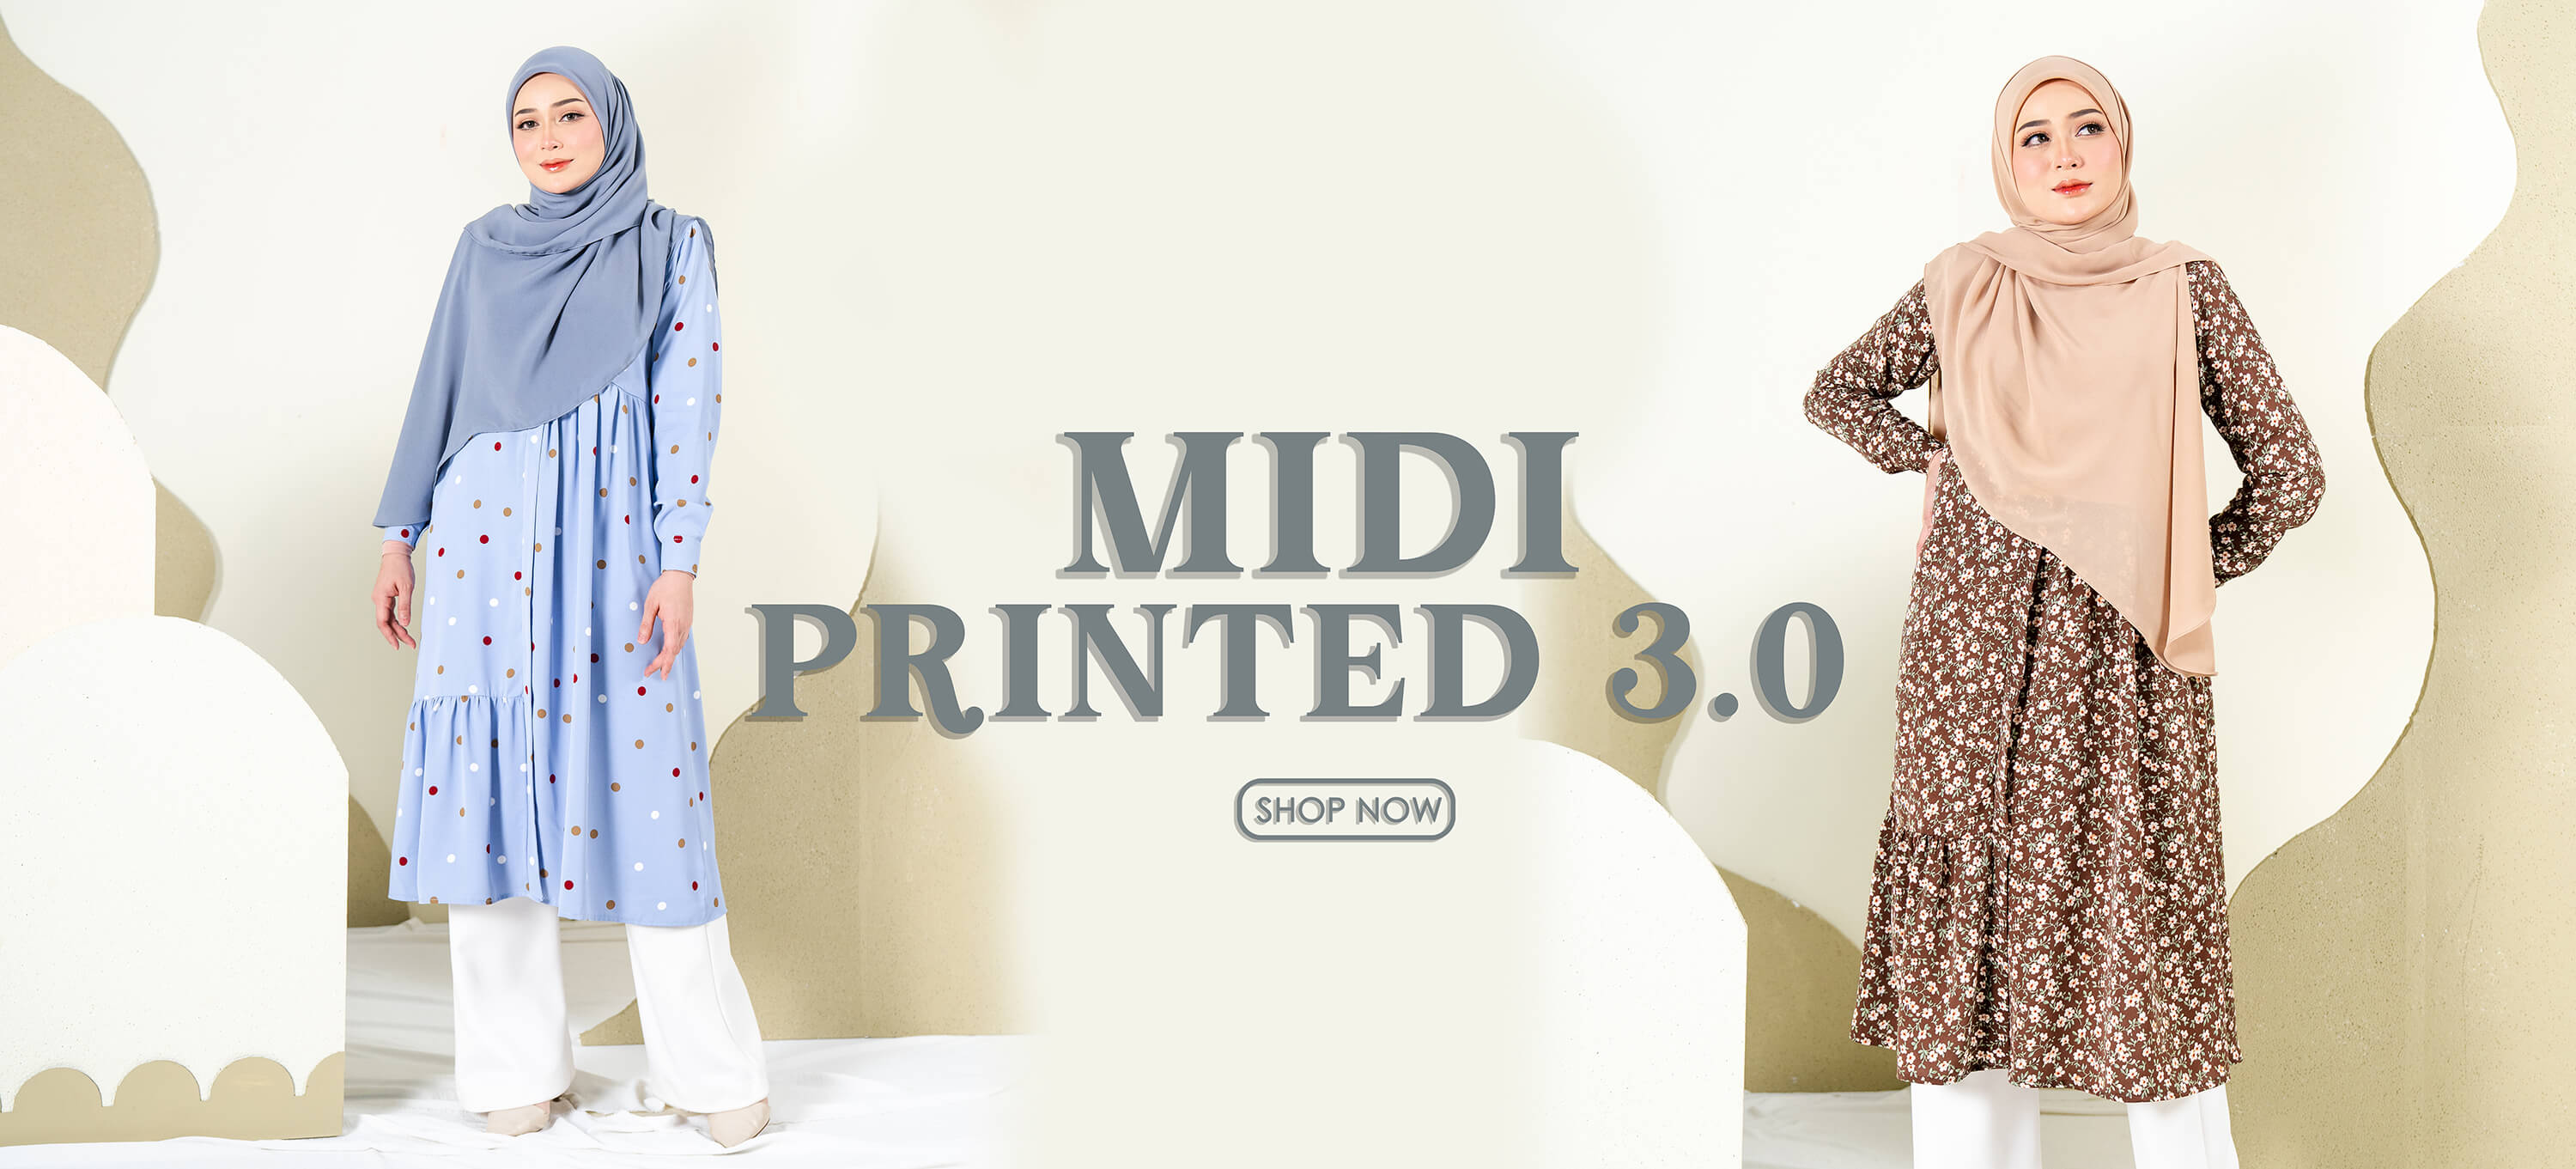 Midi Printed 3.0